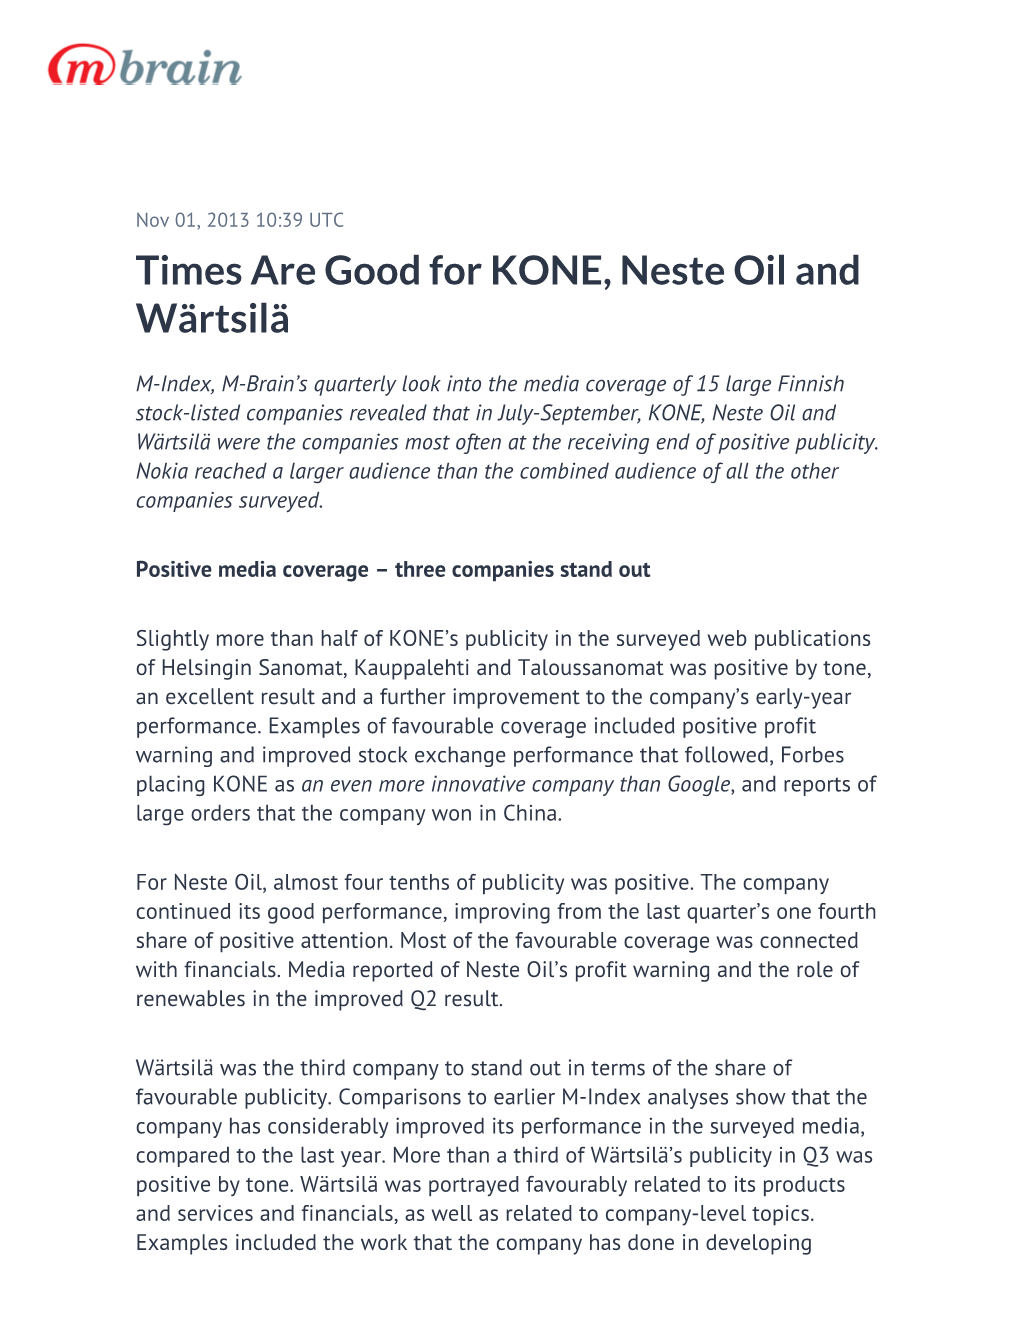 Times Are Good for KONE, Neste Oil and Wärtsilä